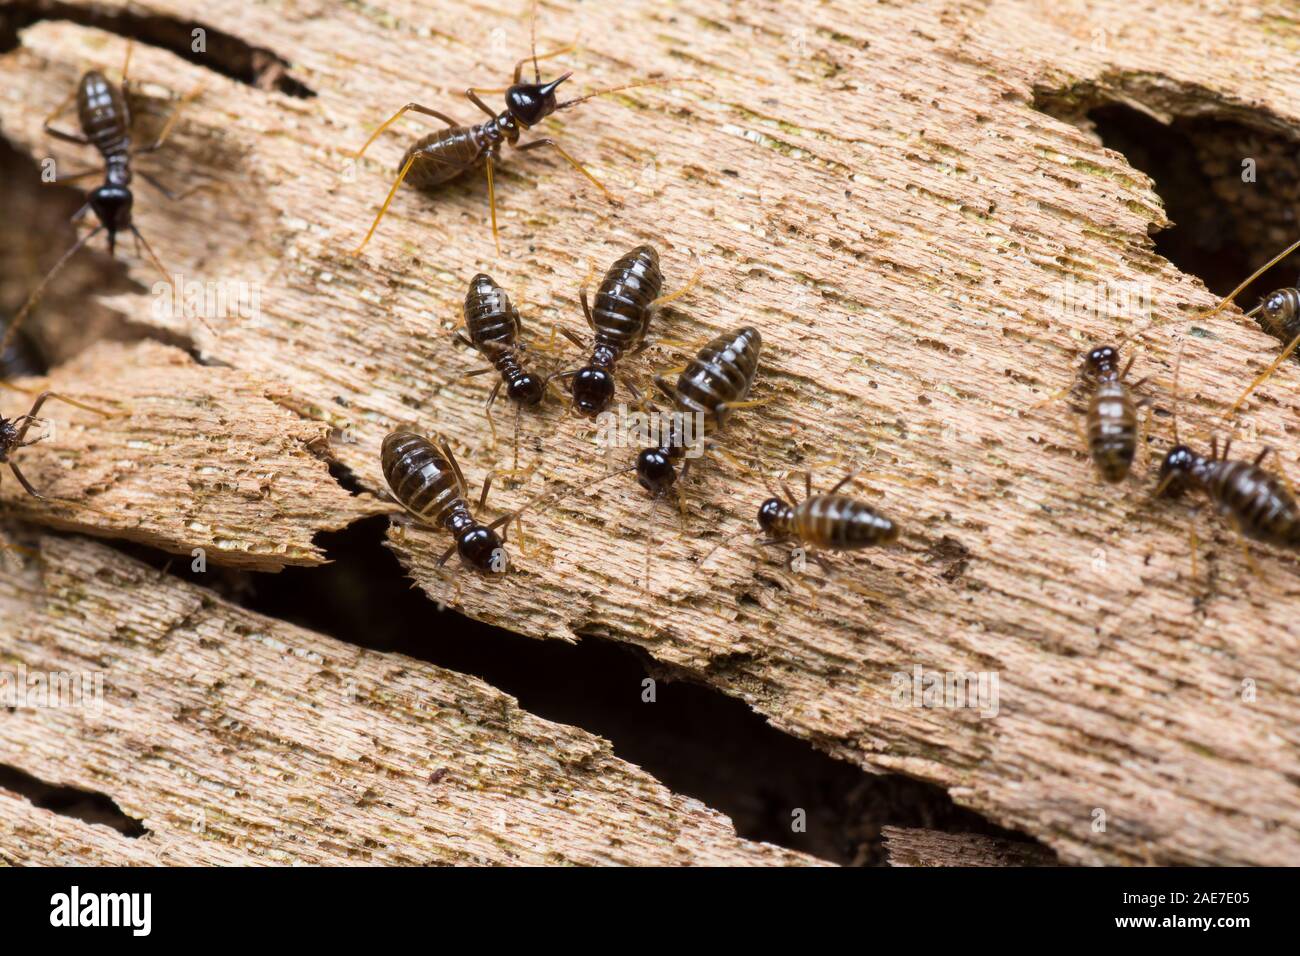 Colonie de Termites sur un journal Hospitalitermes en bois dans le groupe des espèces où vous pouvez voir hommes femmes et des soldats. Banque D'Images